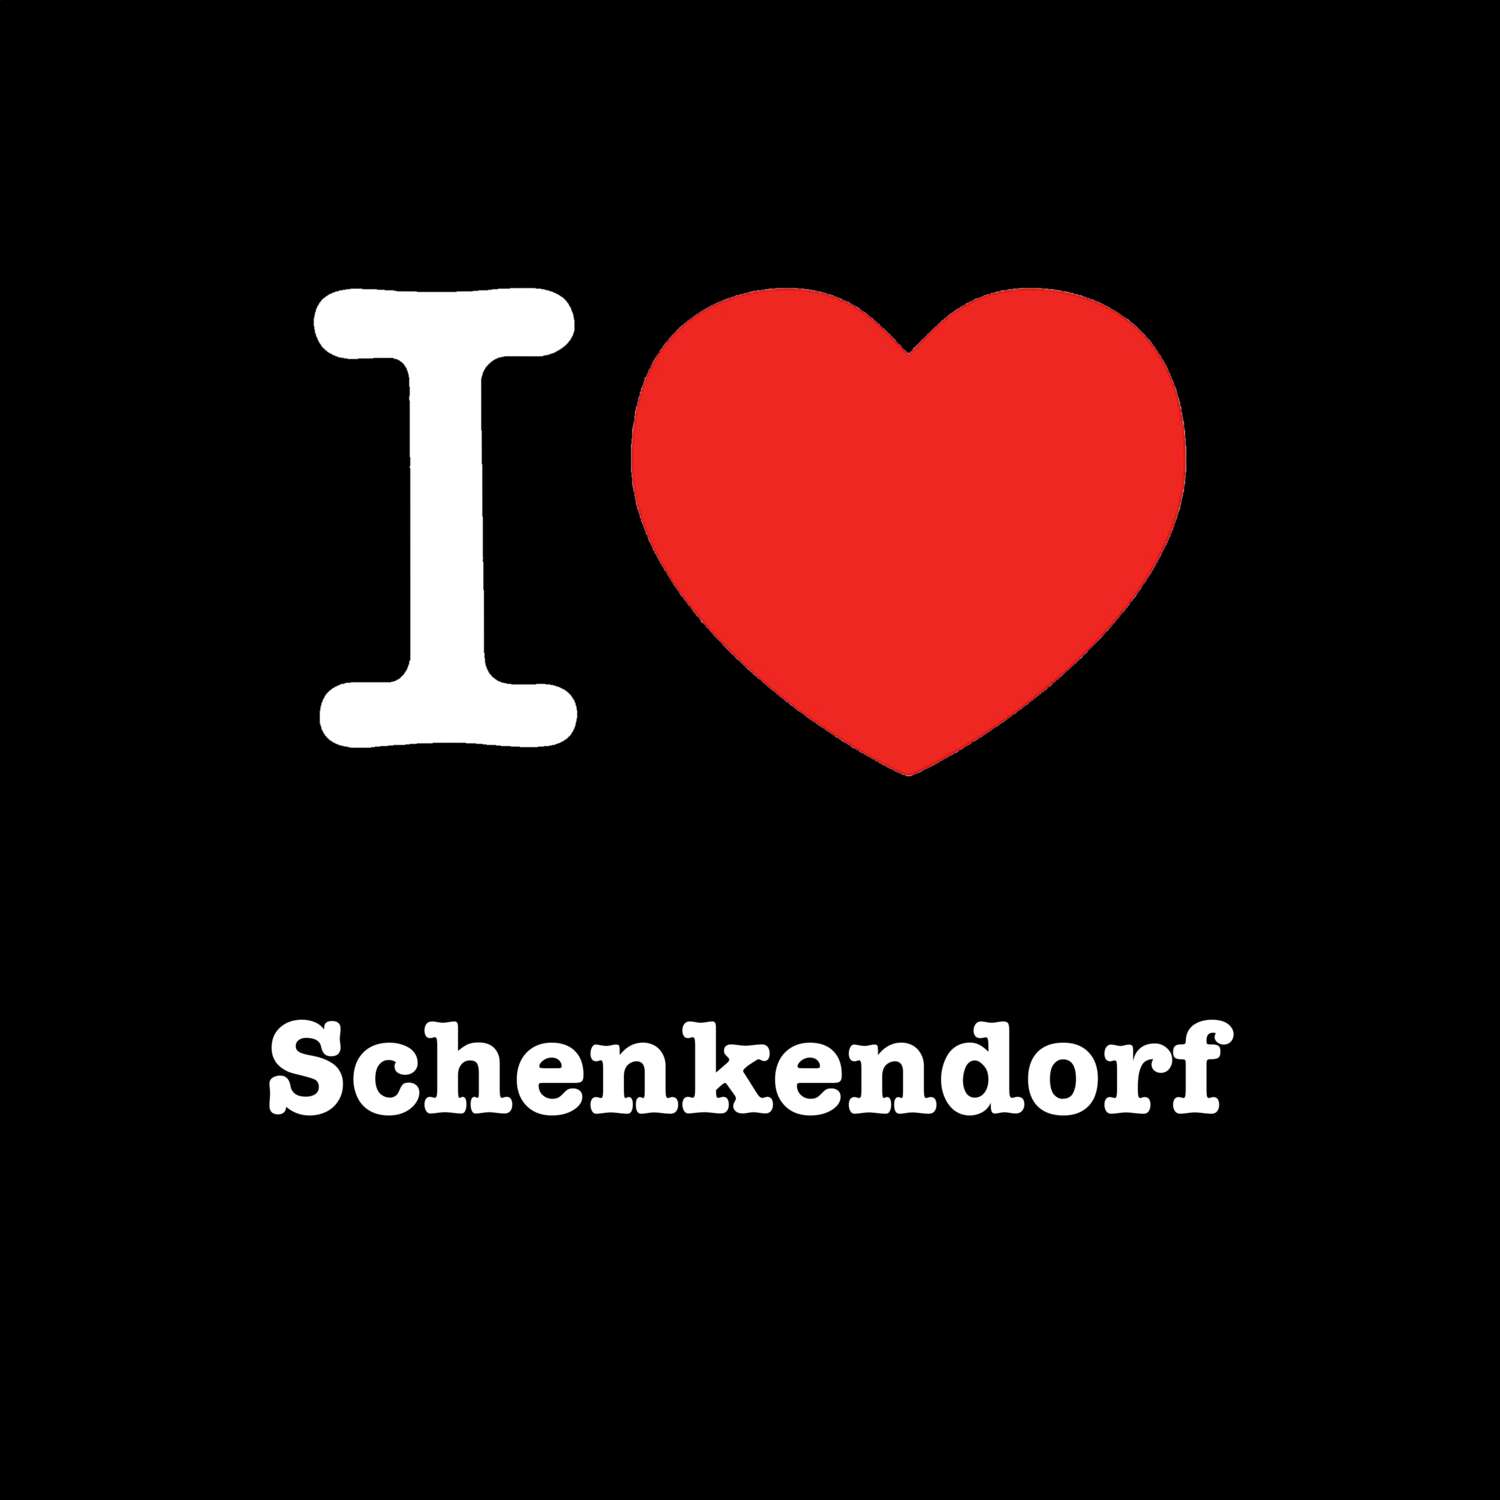 Schenkendorf T-Shirt »I love«